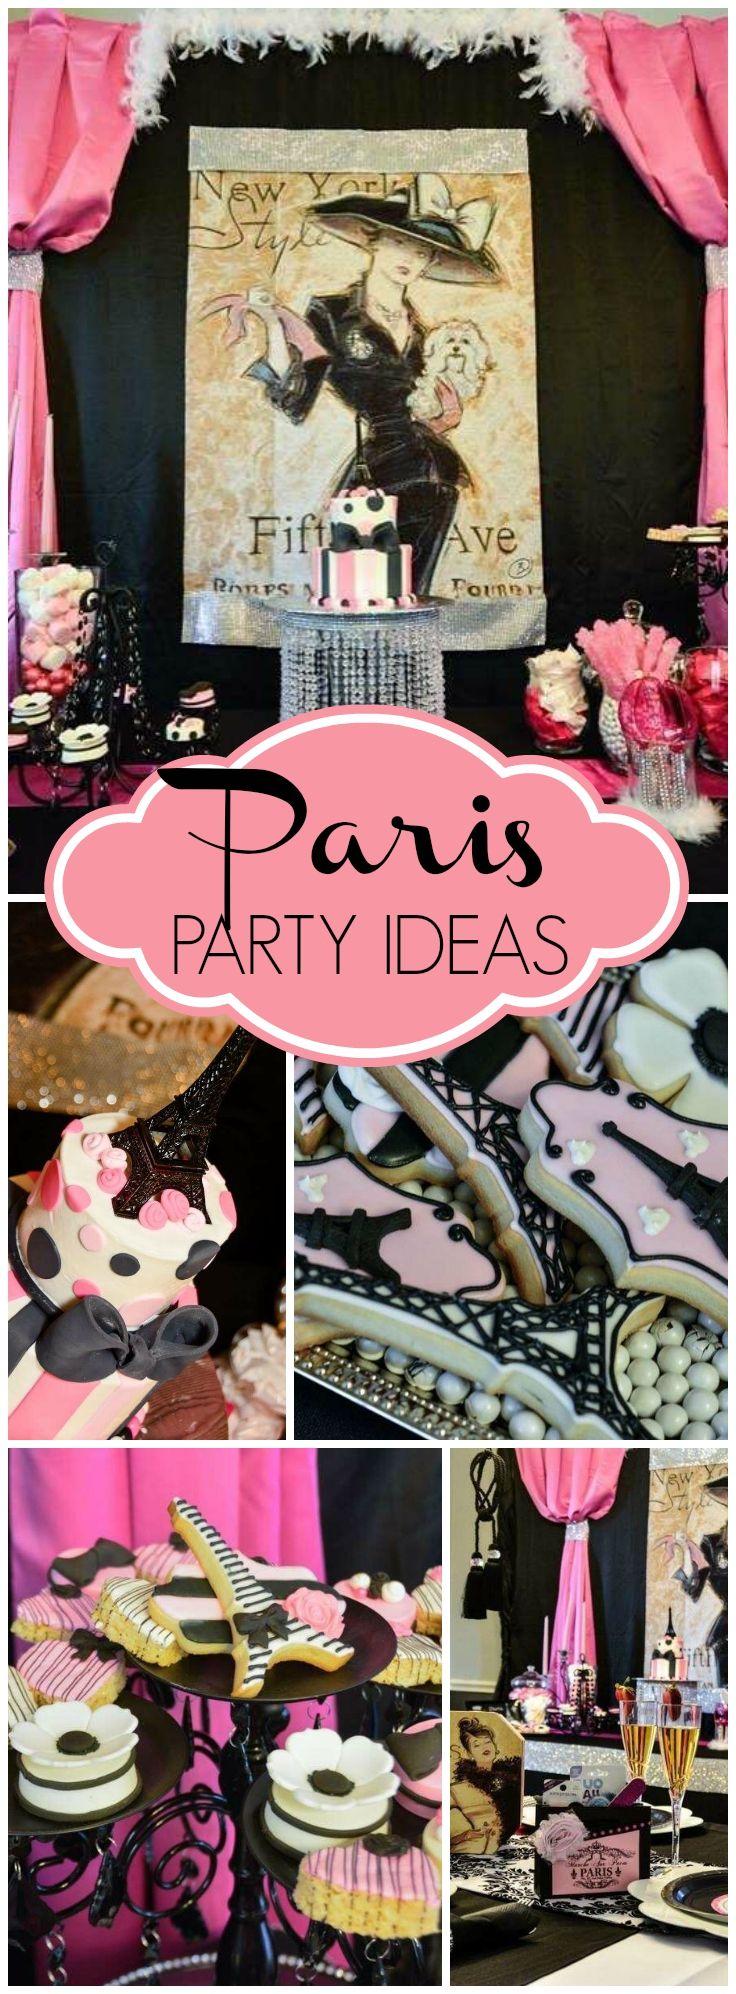 زفاف - French / Parisian / Birthday "Paris Spa Party"